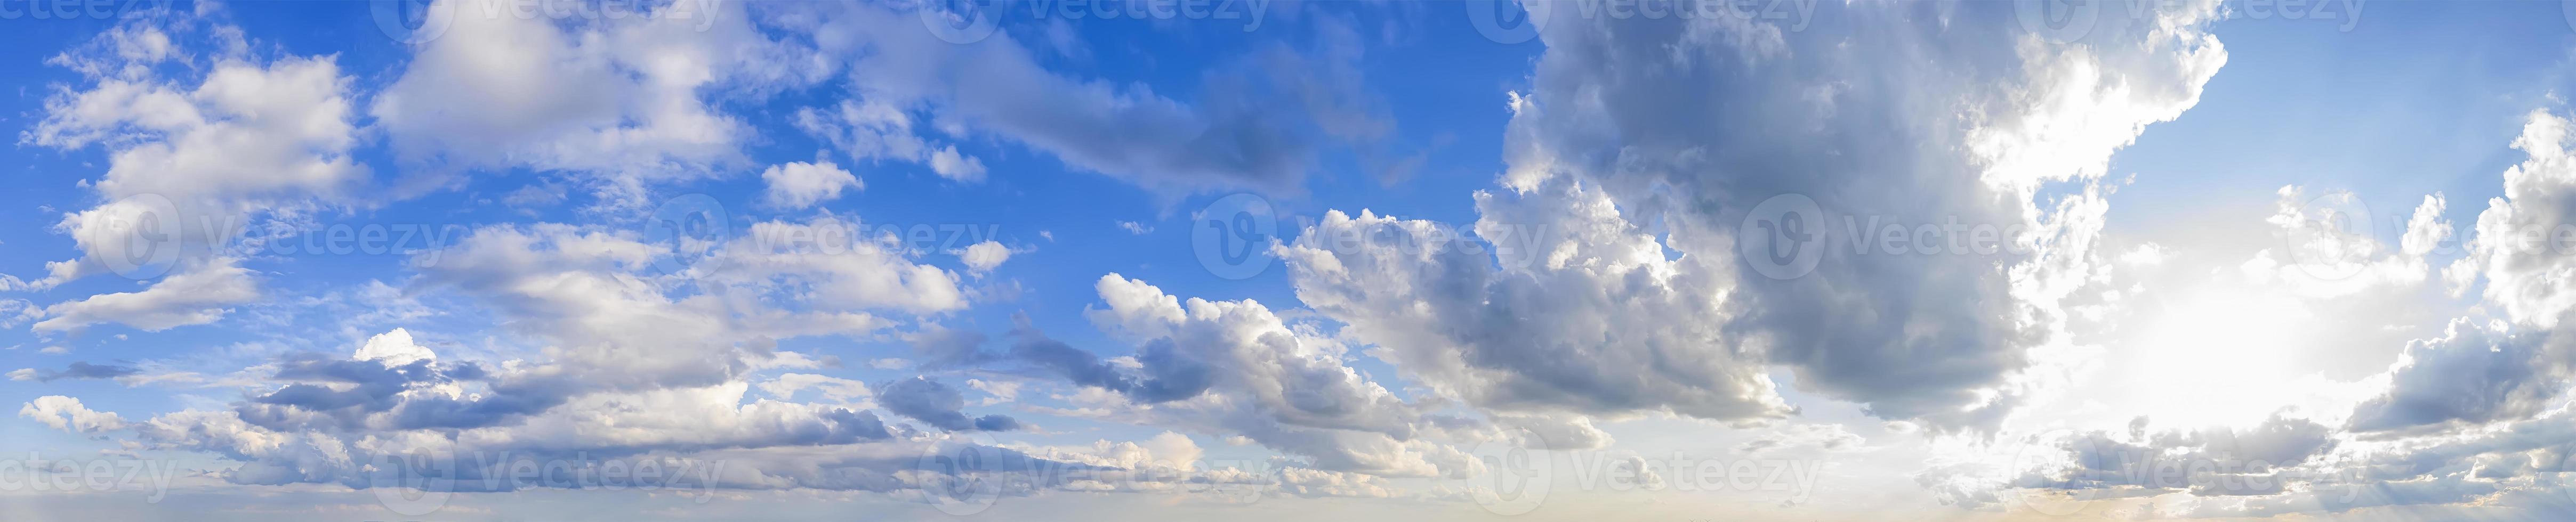 vista panorámica del cielo azul con nubes y sol. foto